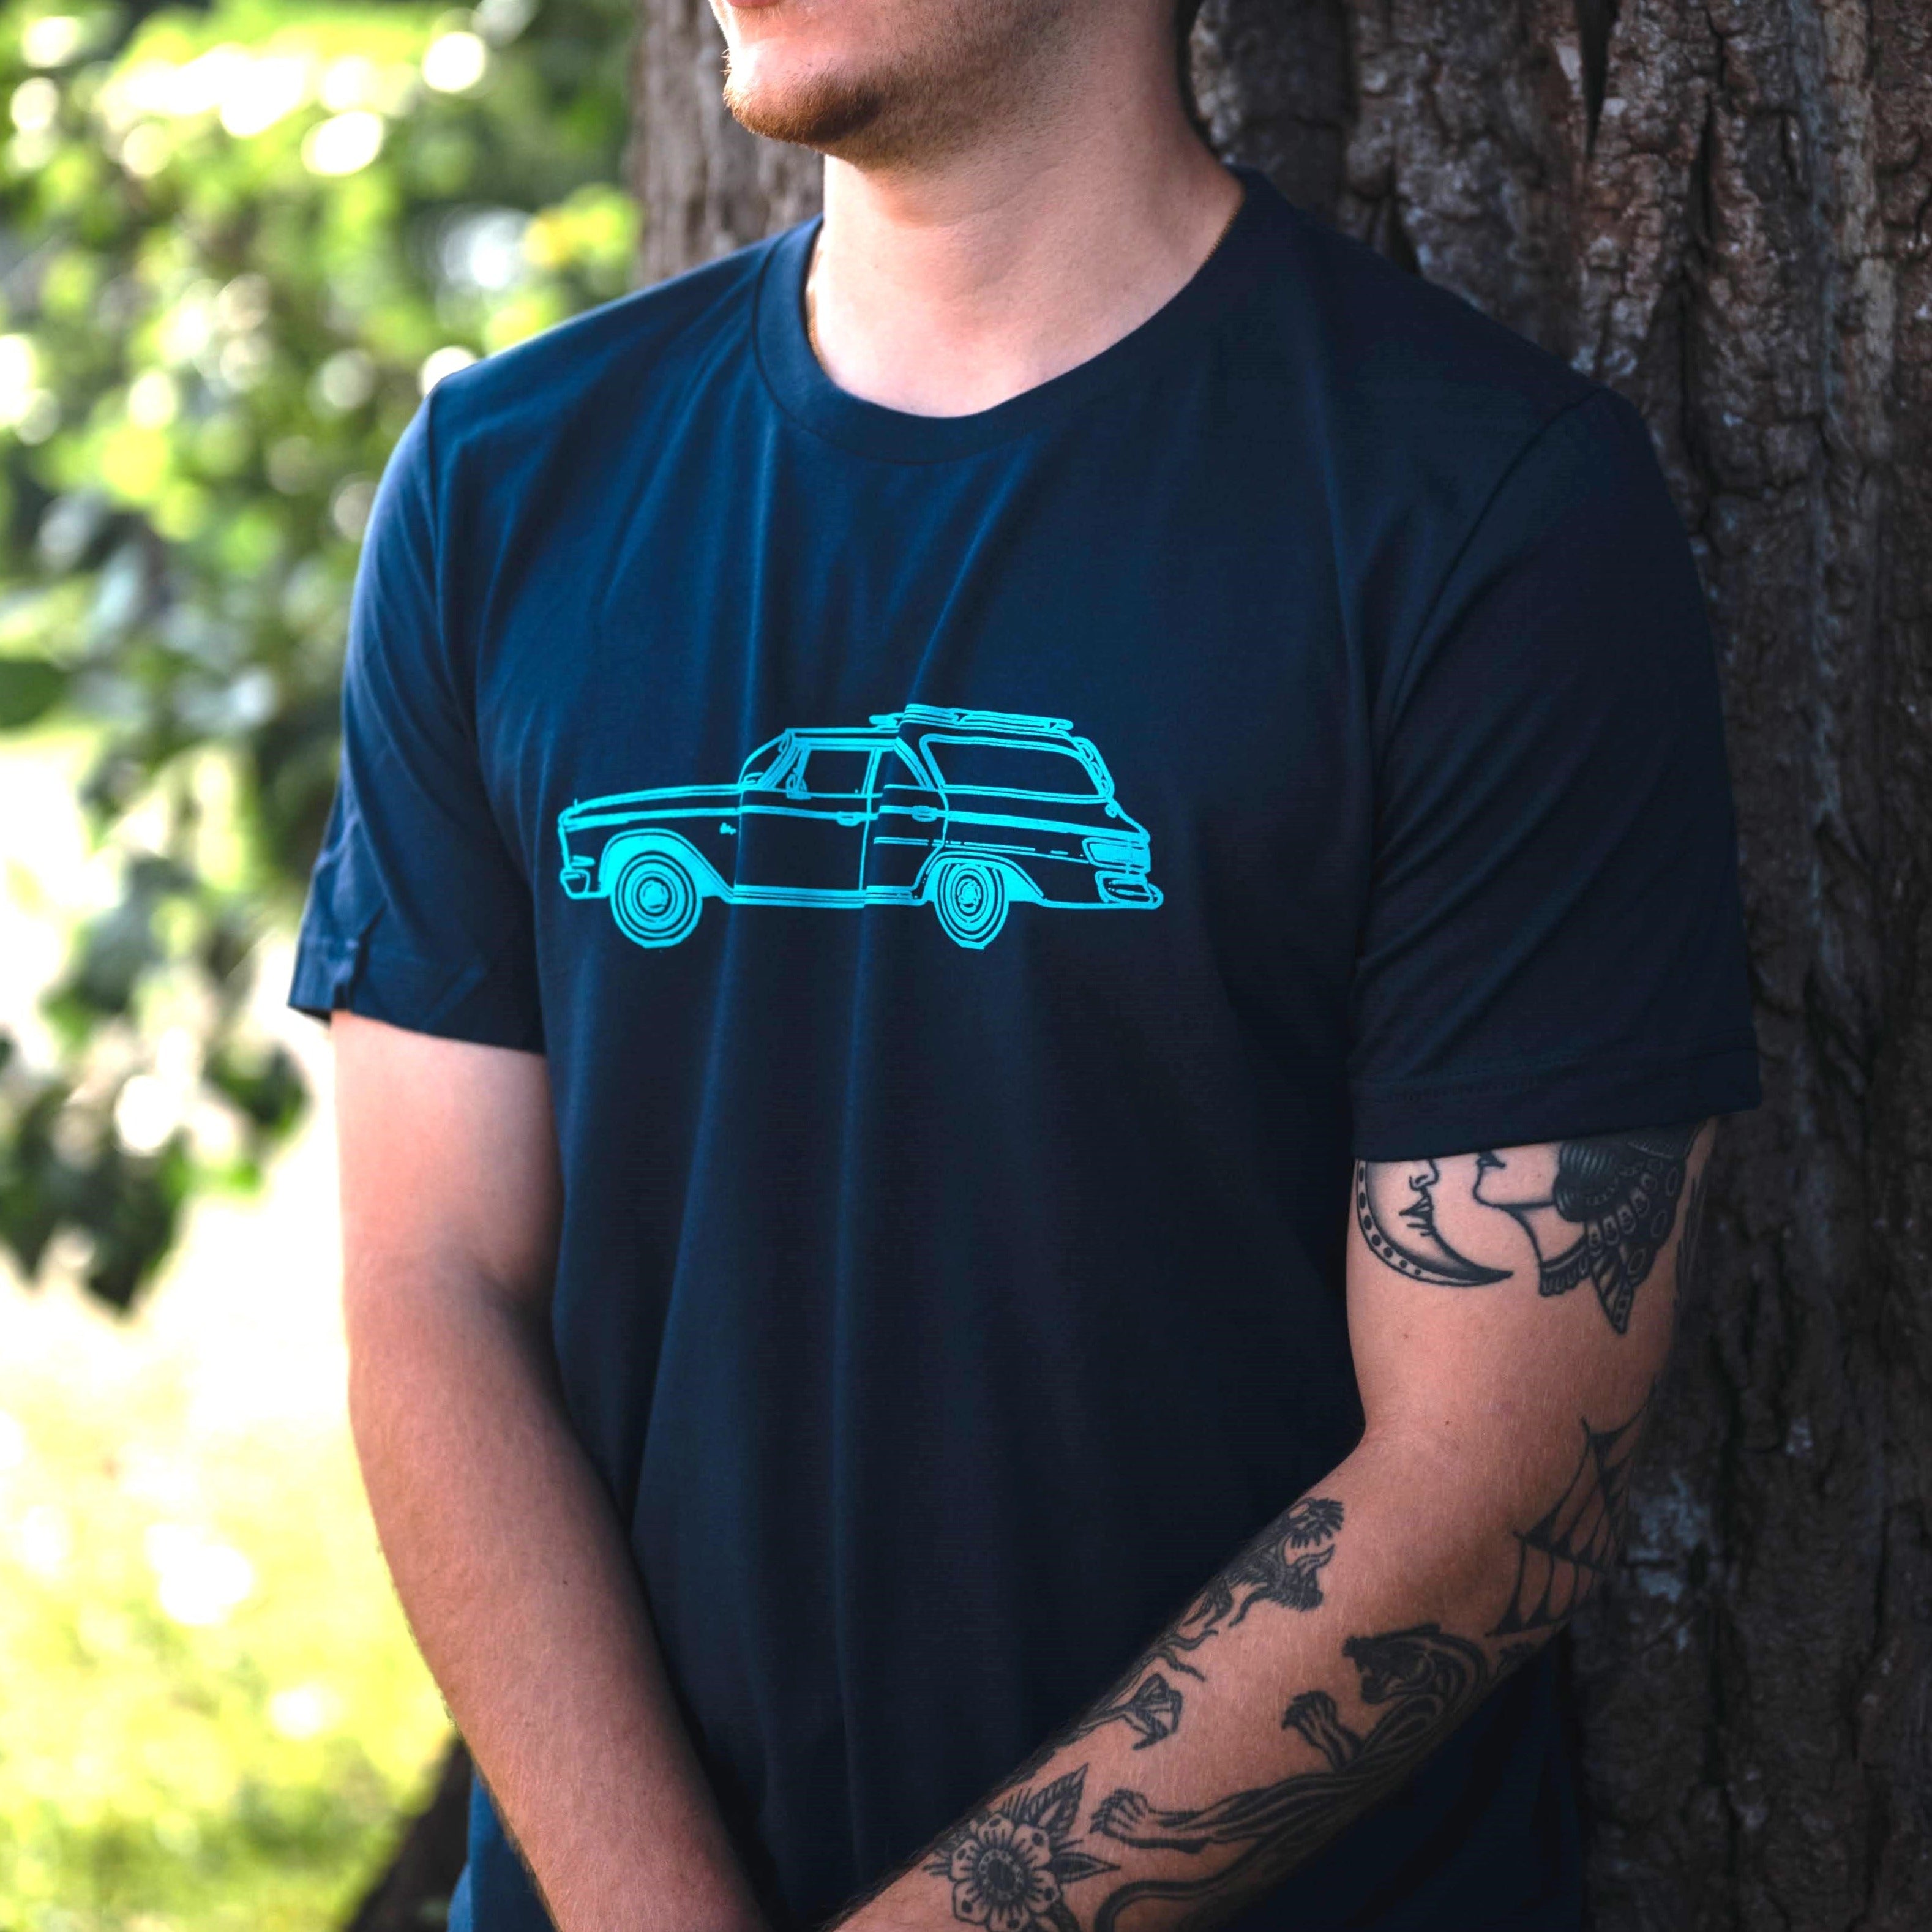 Family car - Men's/Unisex T-shirt